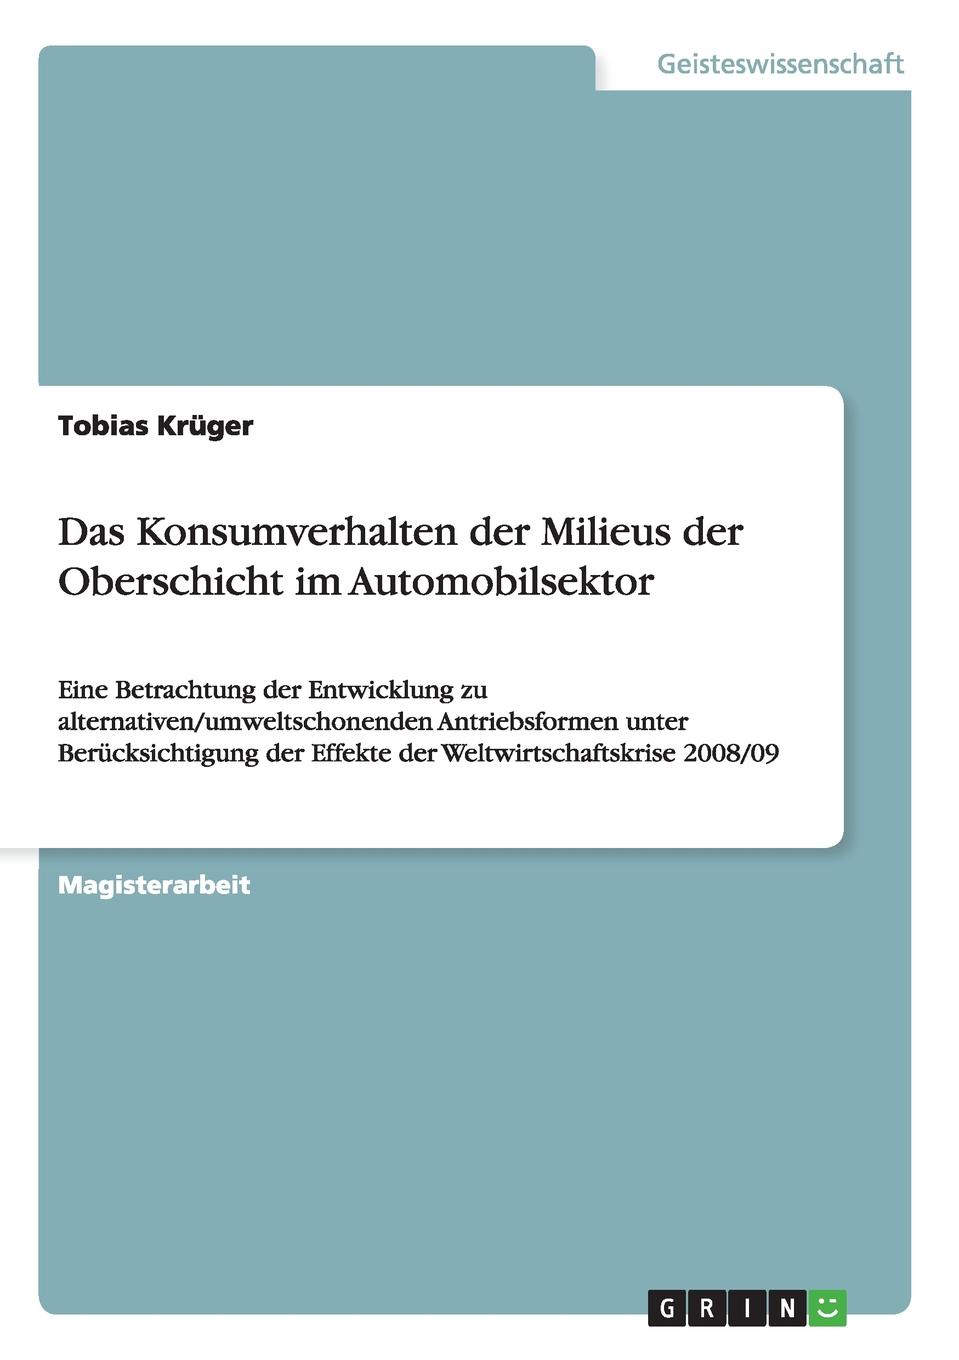 Tobias Krüger Das Konsumverhalten der Milieus der Oberschicht im Automobilsektor